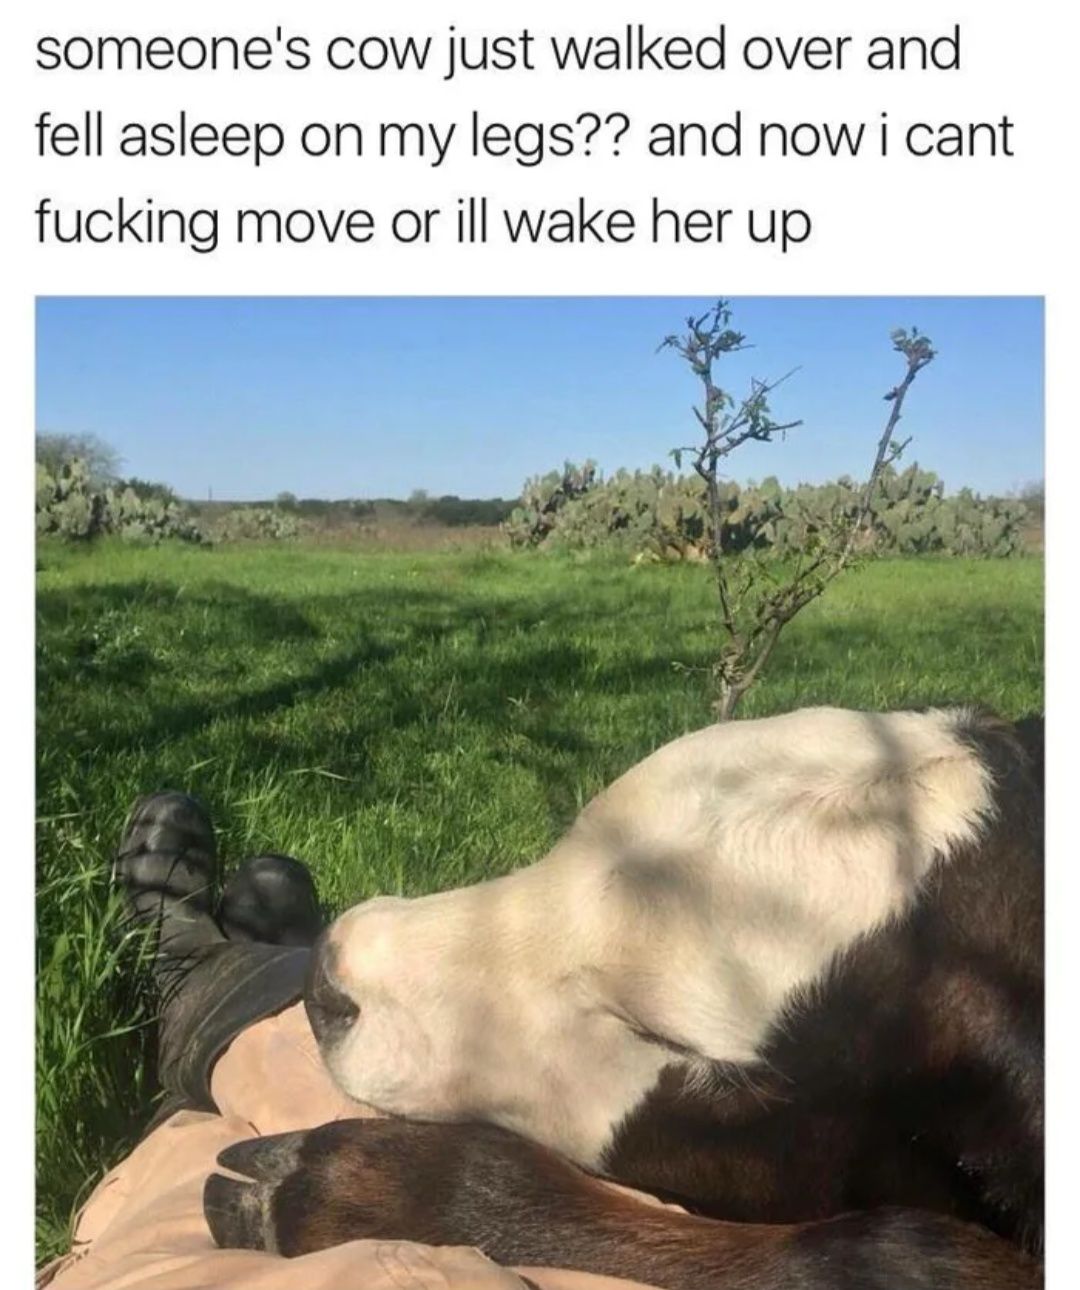 A calf resting on a calf.